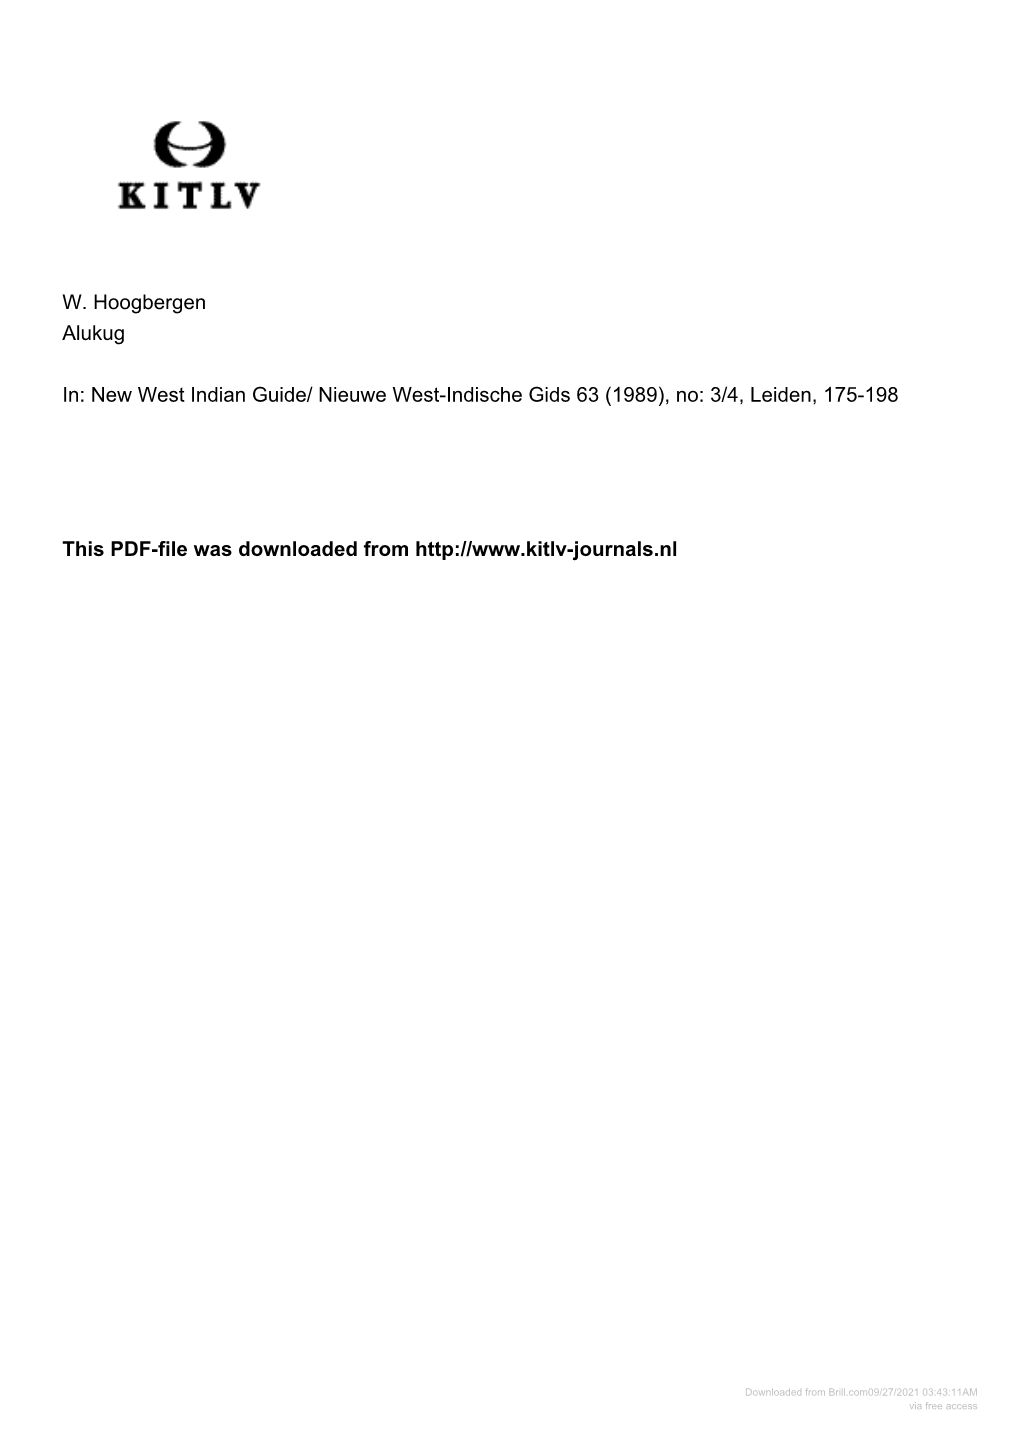 3/4, Leiden, 175-198 This PDF-File